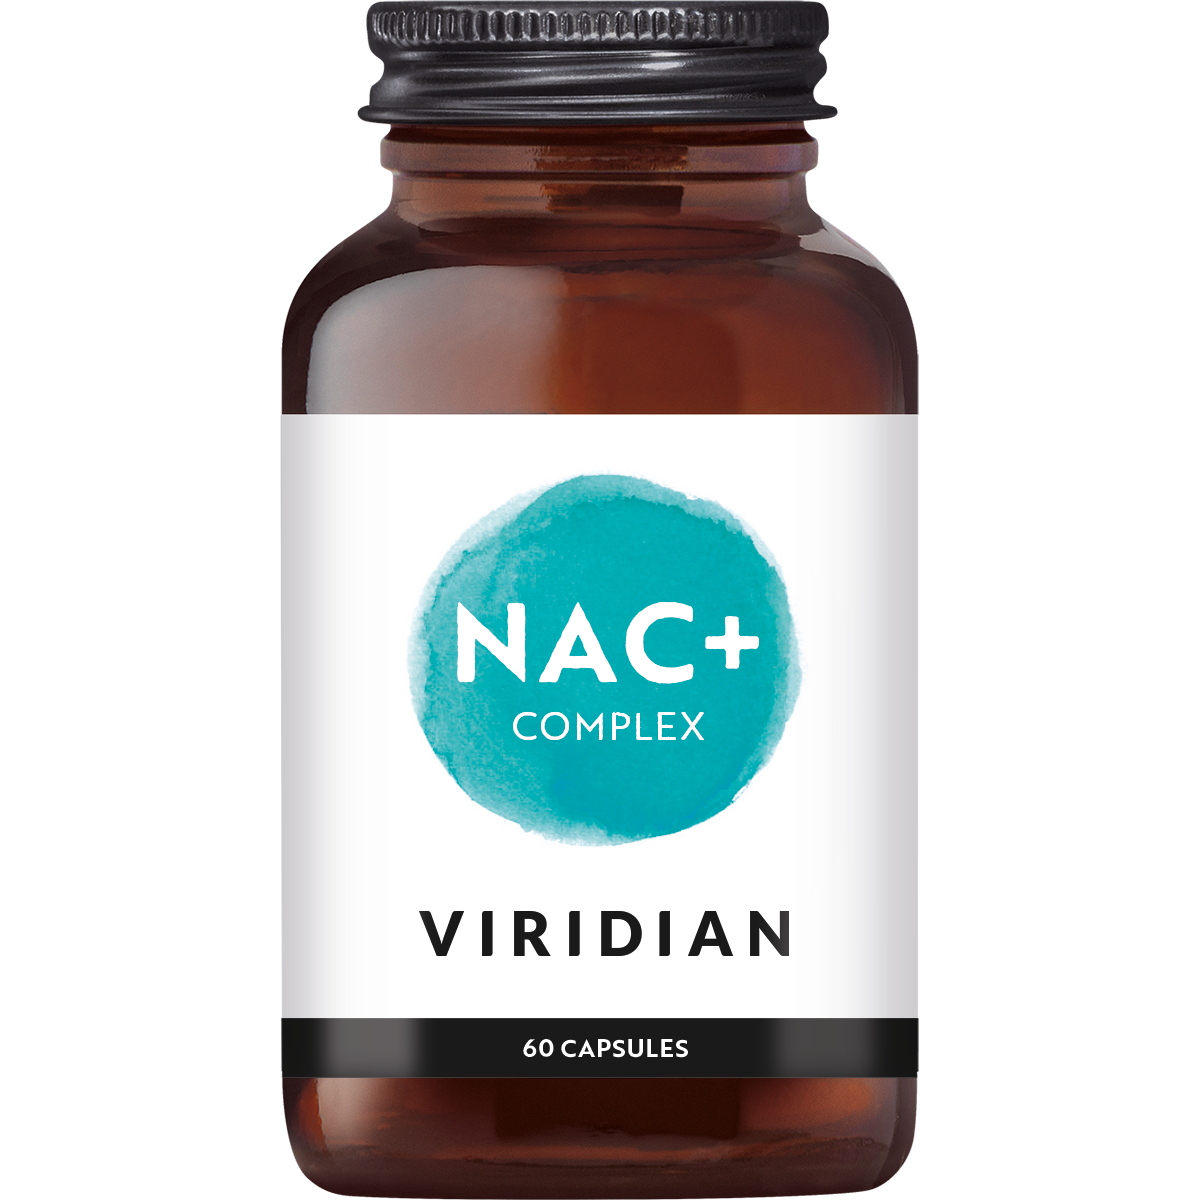 Viridian NAC+ Complex (60 stuks)